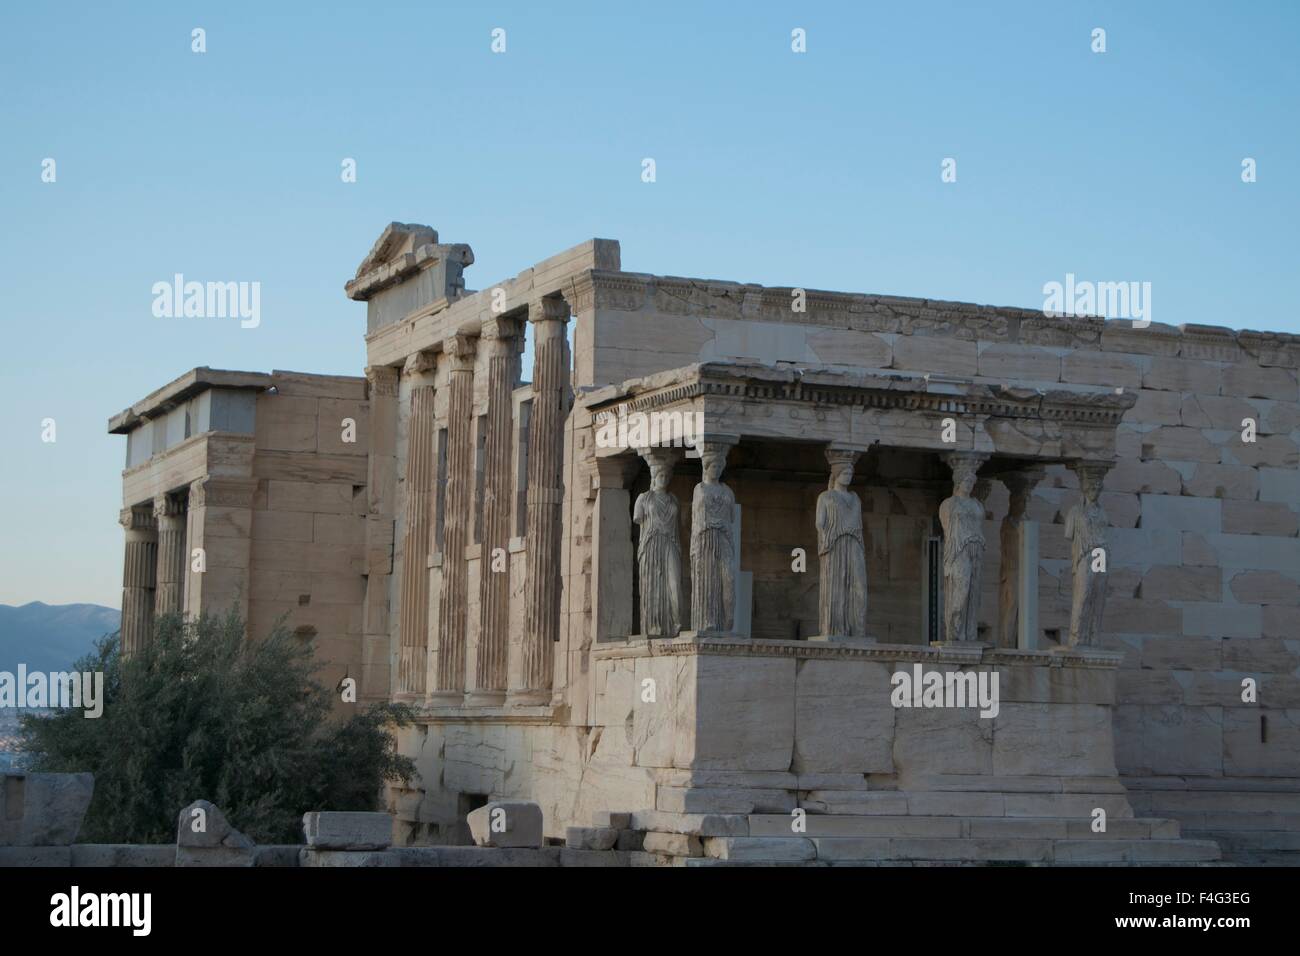 Erechtheion Acropolis Greek temple architecture Stock Photo